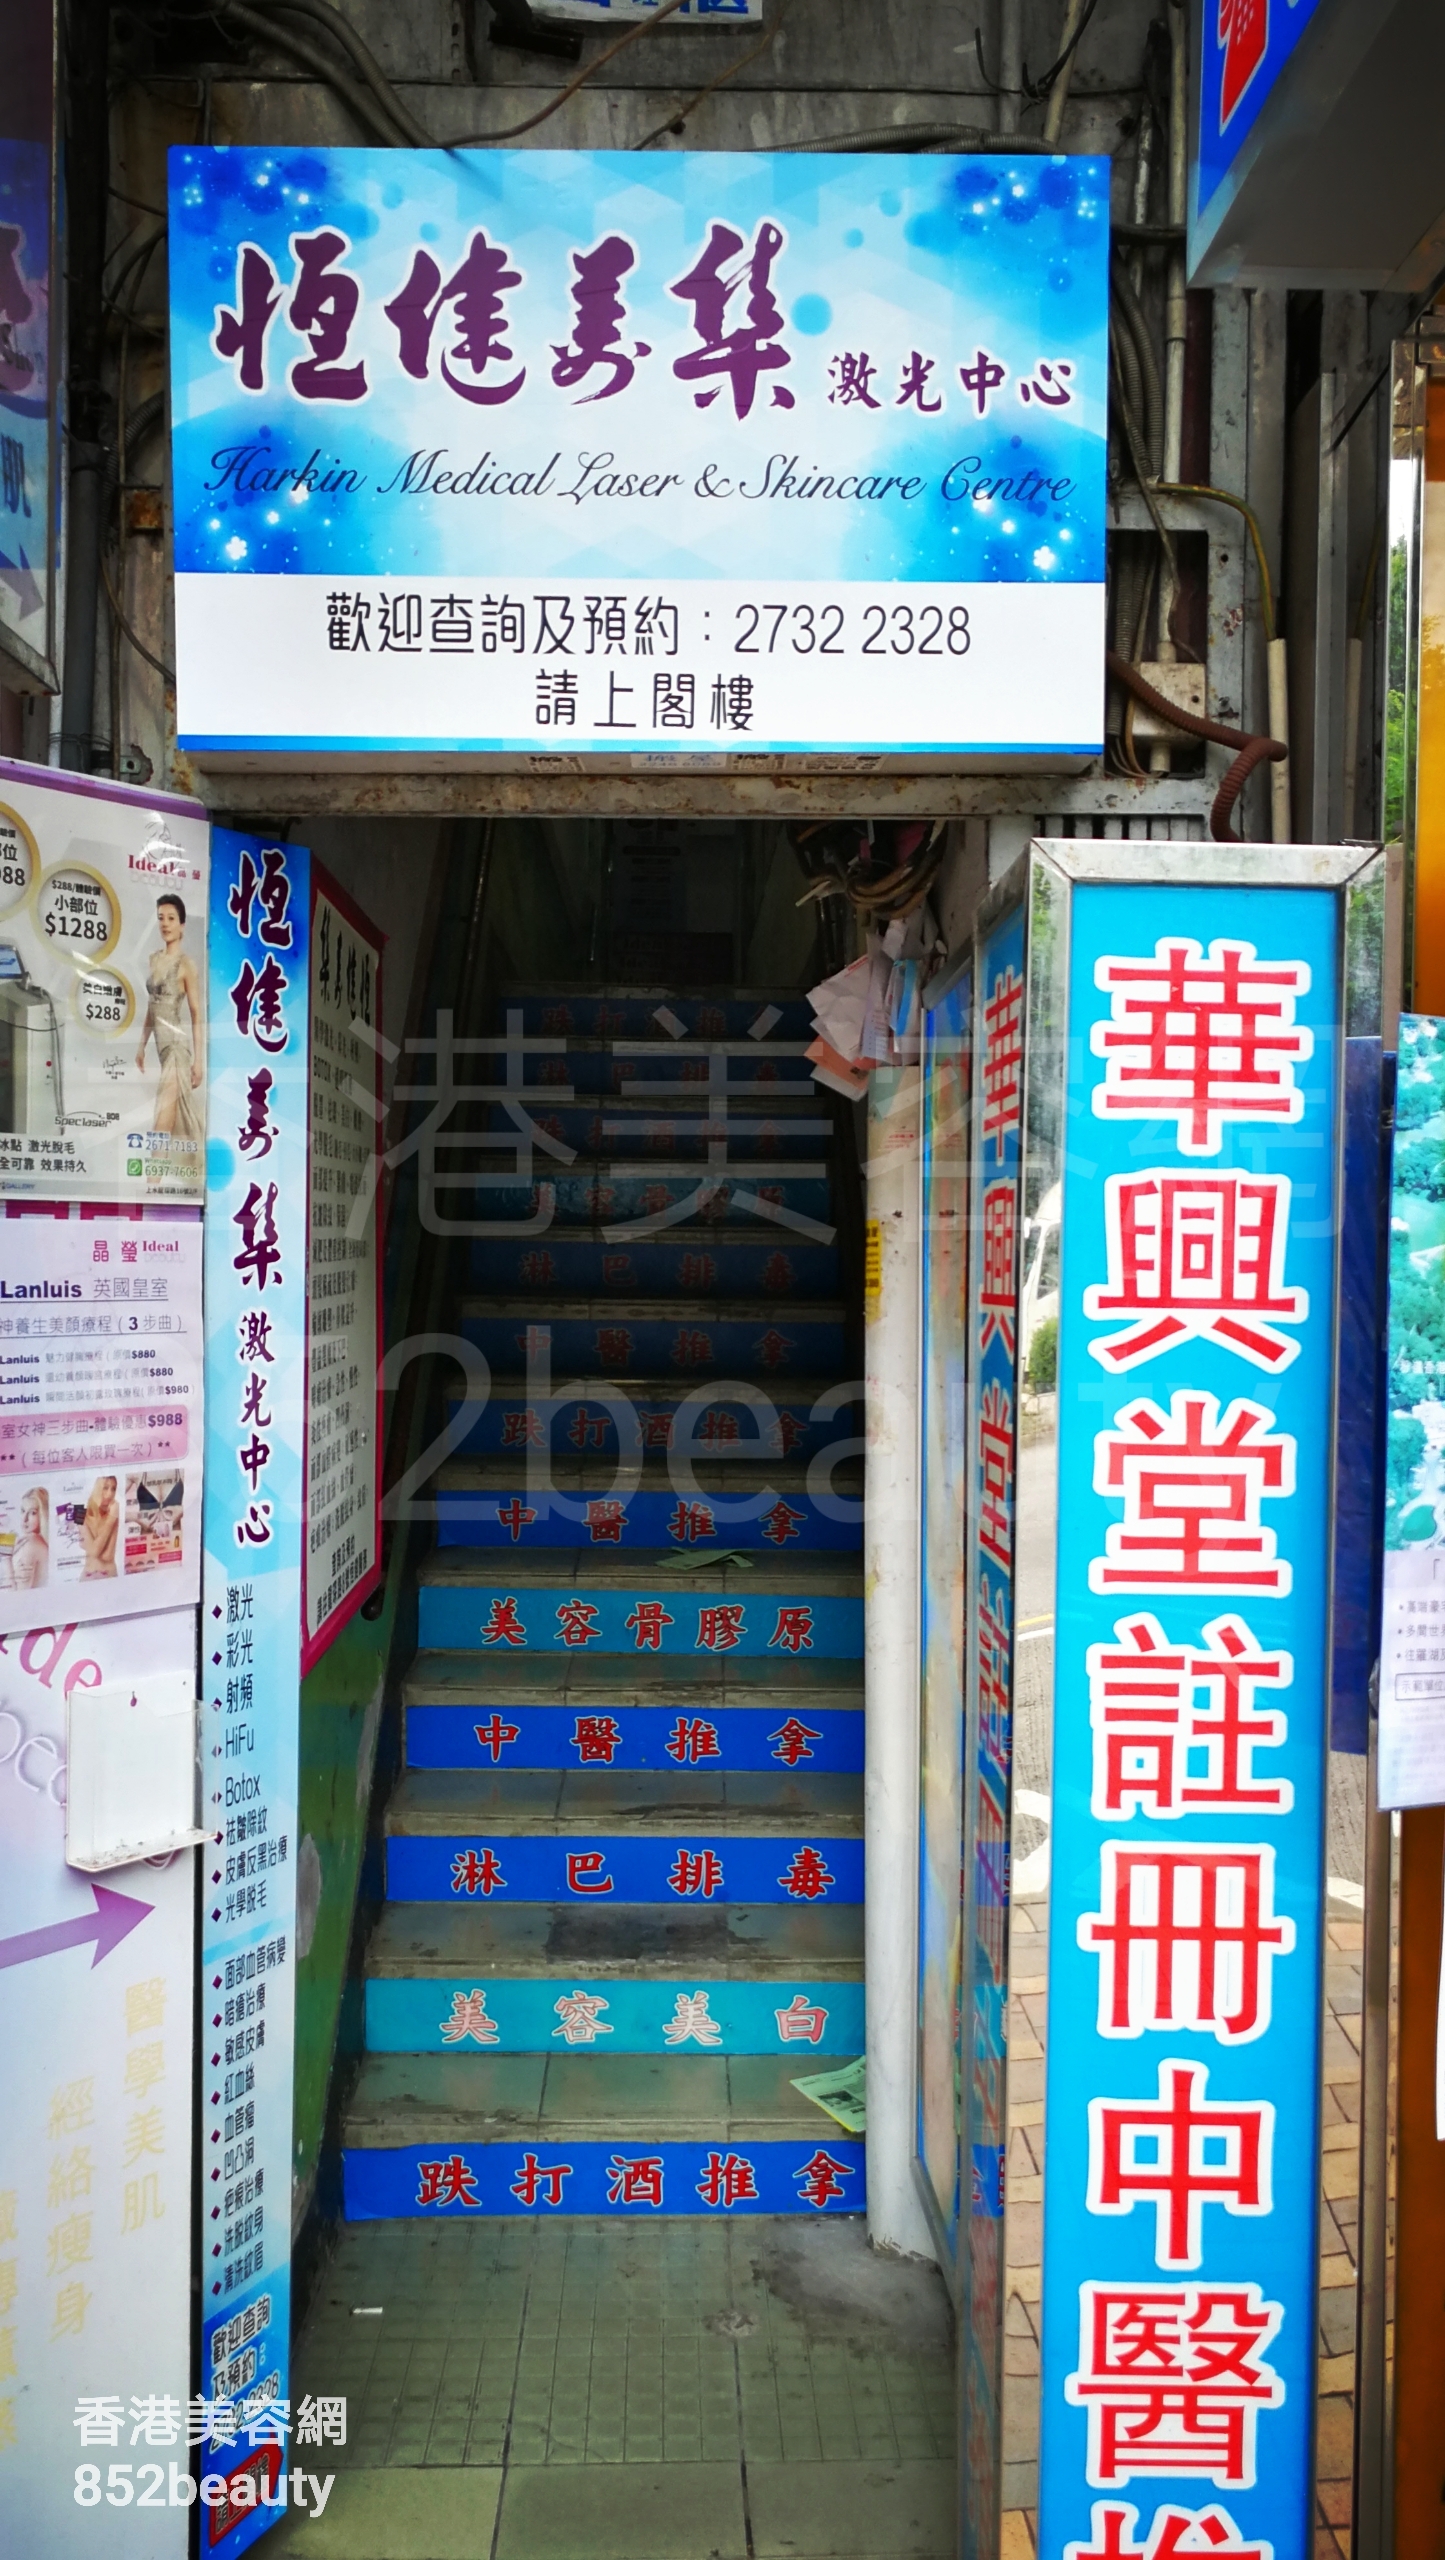 香港美容網 Hong Kong Beauty Salon 美容院 / 美容師: 恆健美集 激光中心